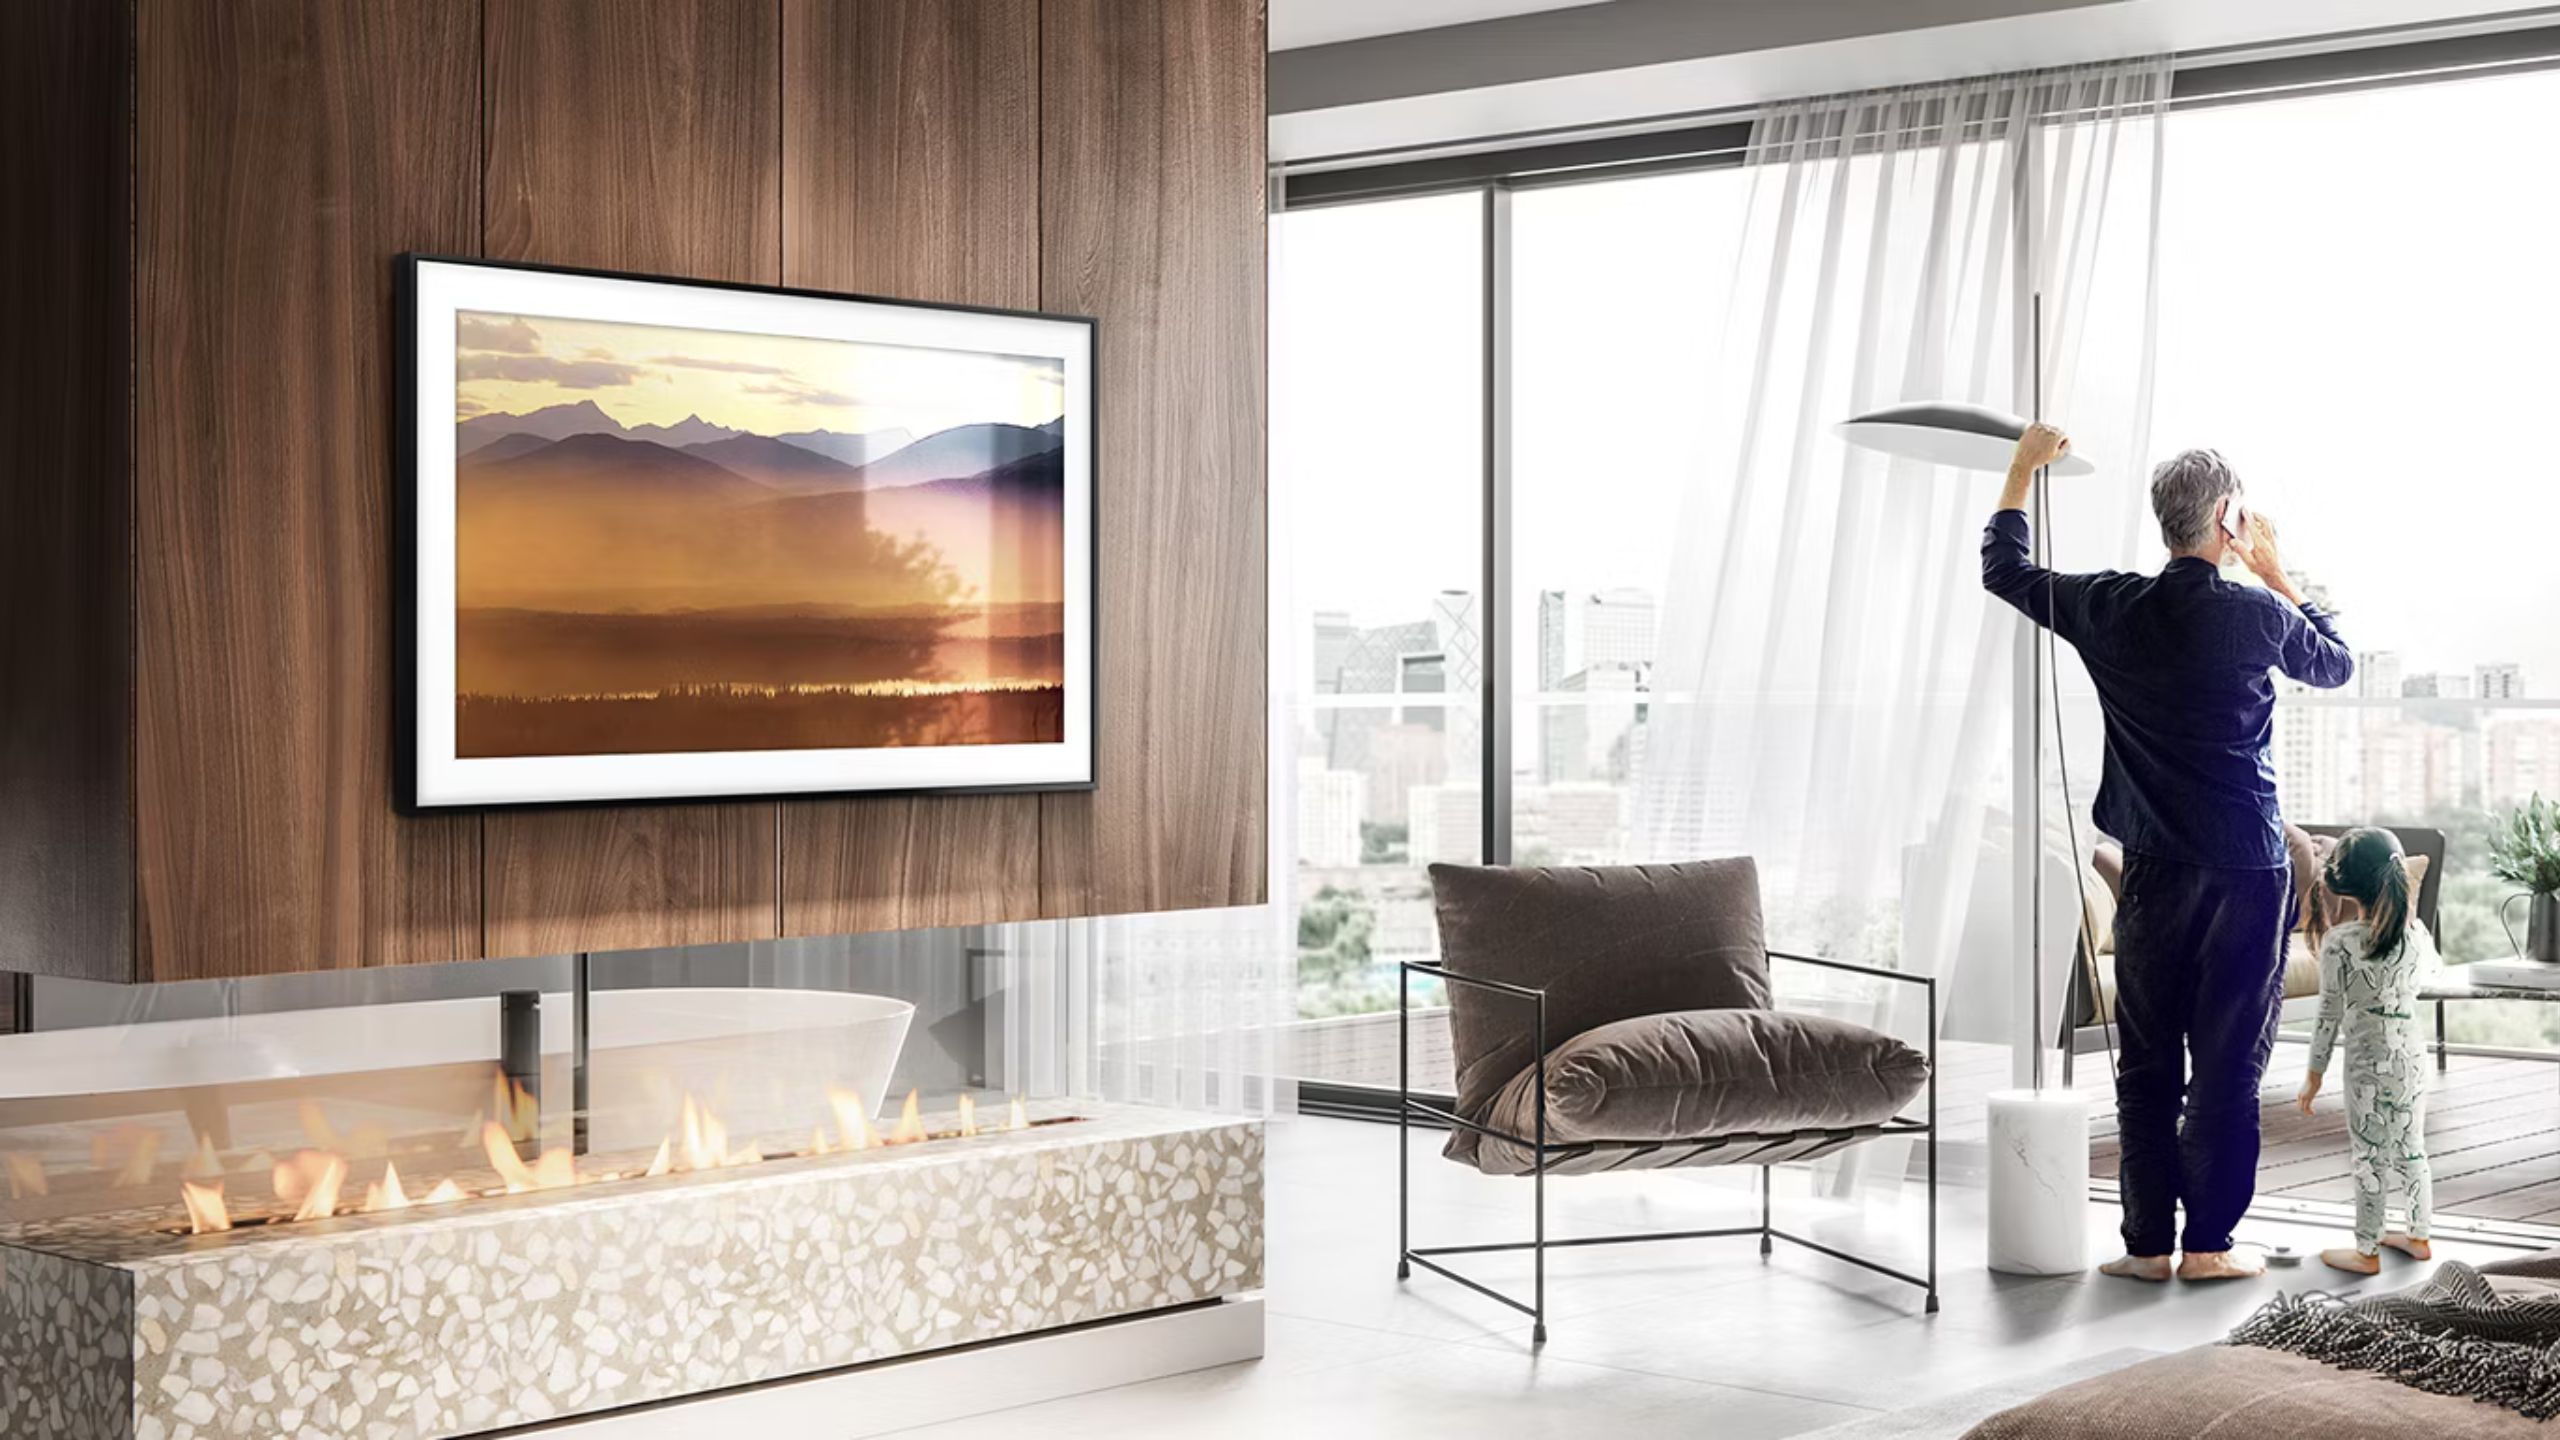 The Frame TV Magnum Samsung smart TV